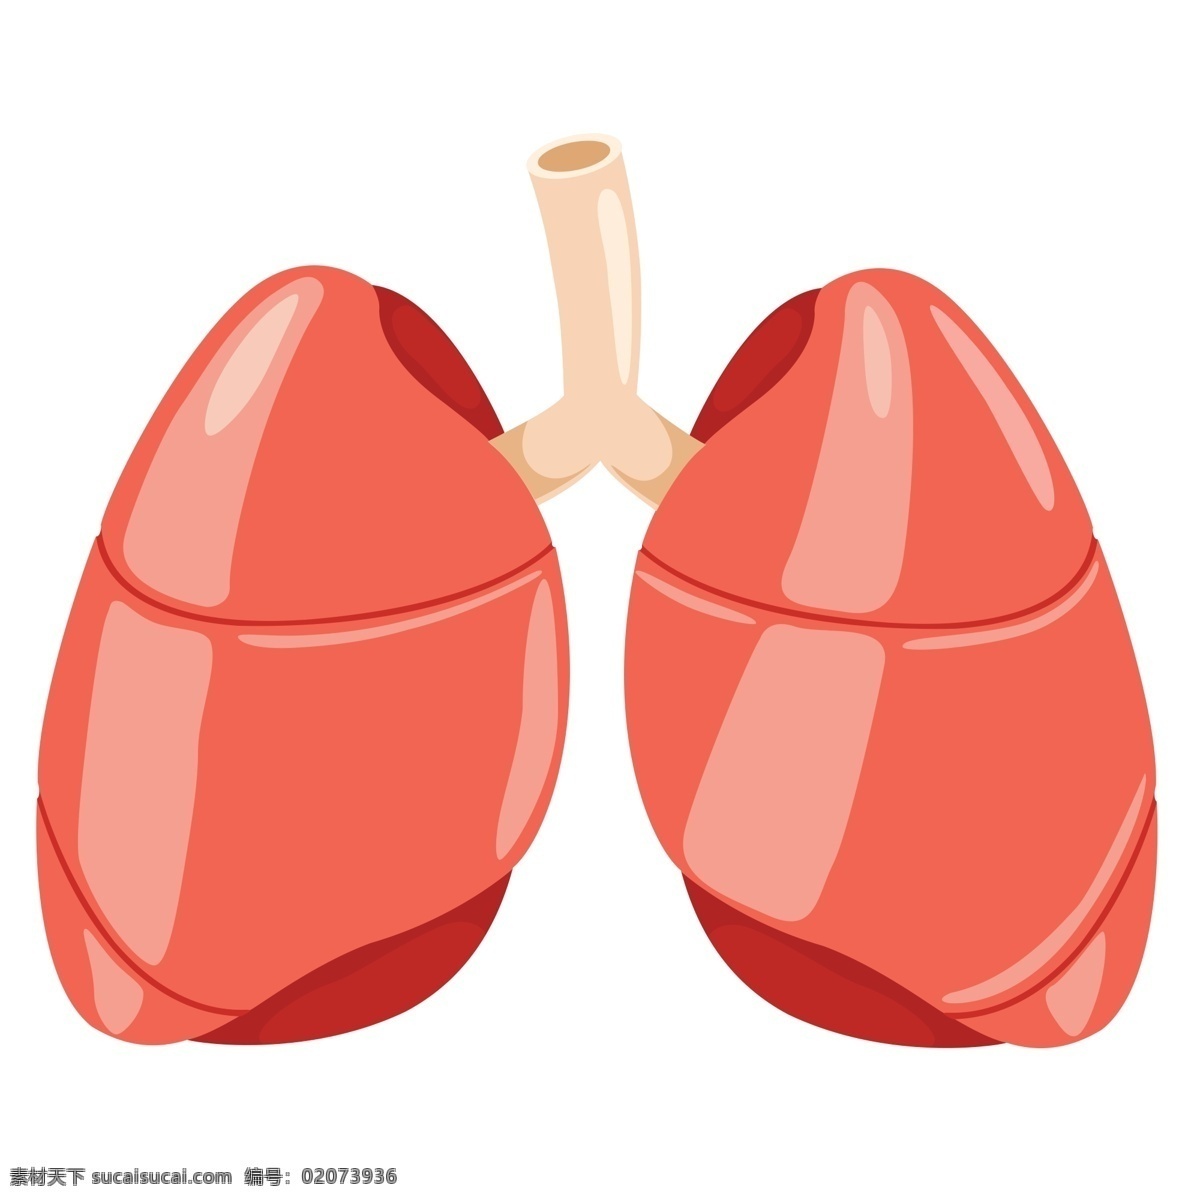 防治 结核病 日 器官 肺 卡通 拟人 元素 卡通风格 红色 图标